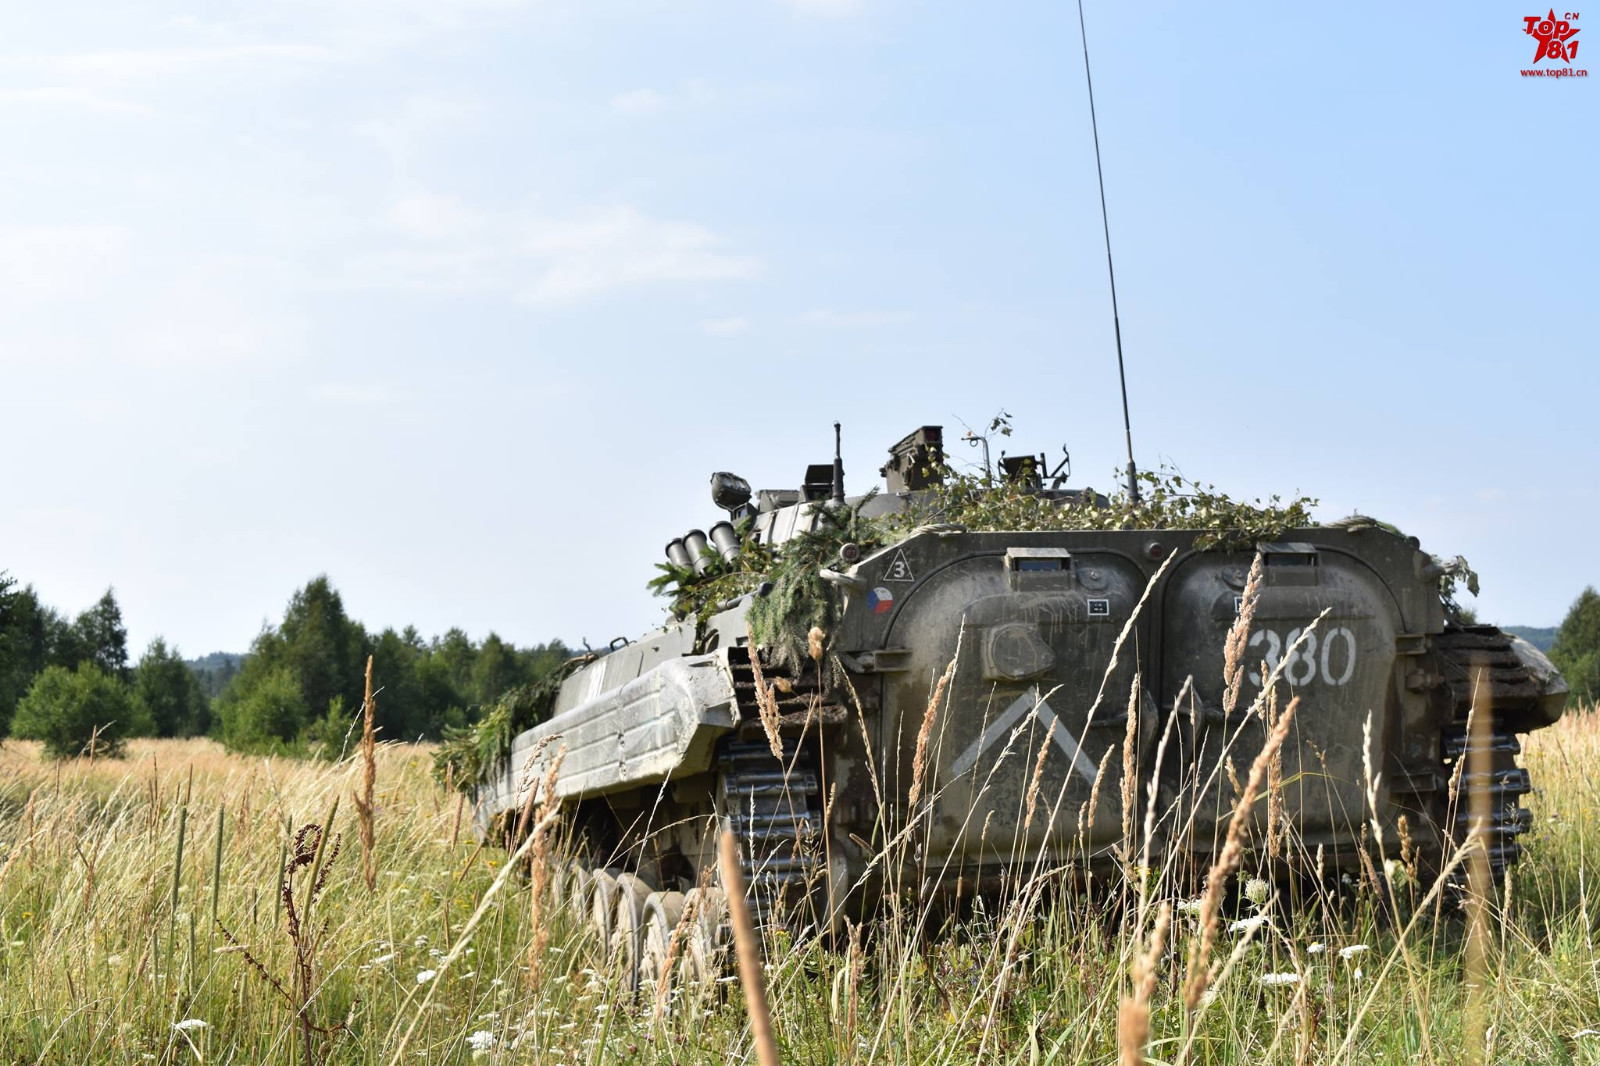 演习中的捷克坦克装甲部队,仍然保留了很多华约时代的老式武器